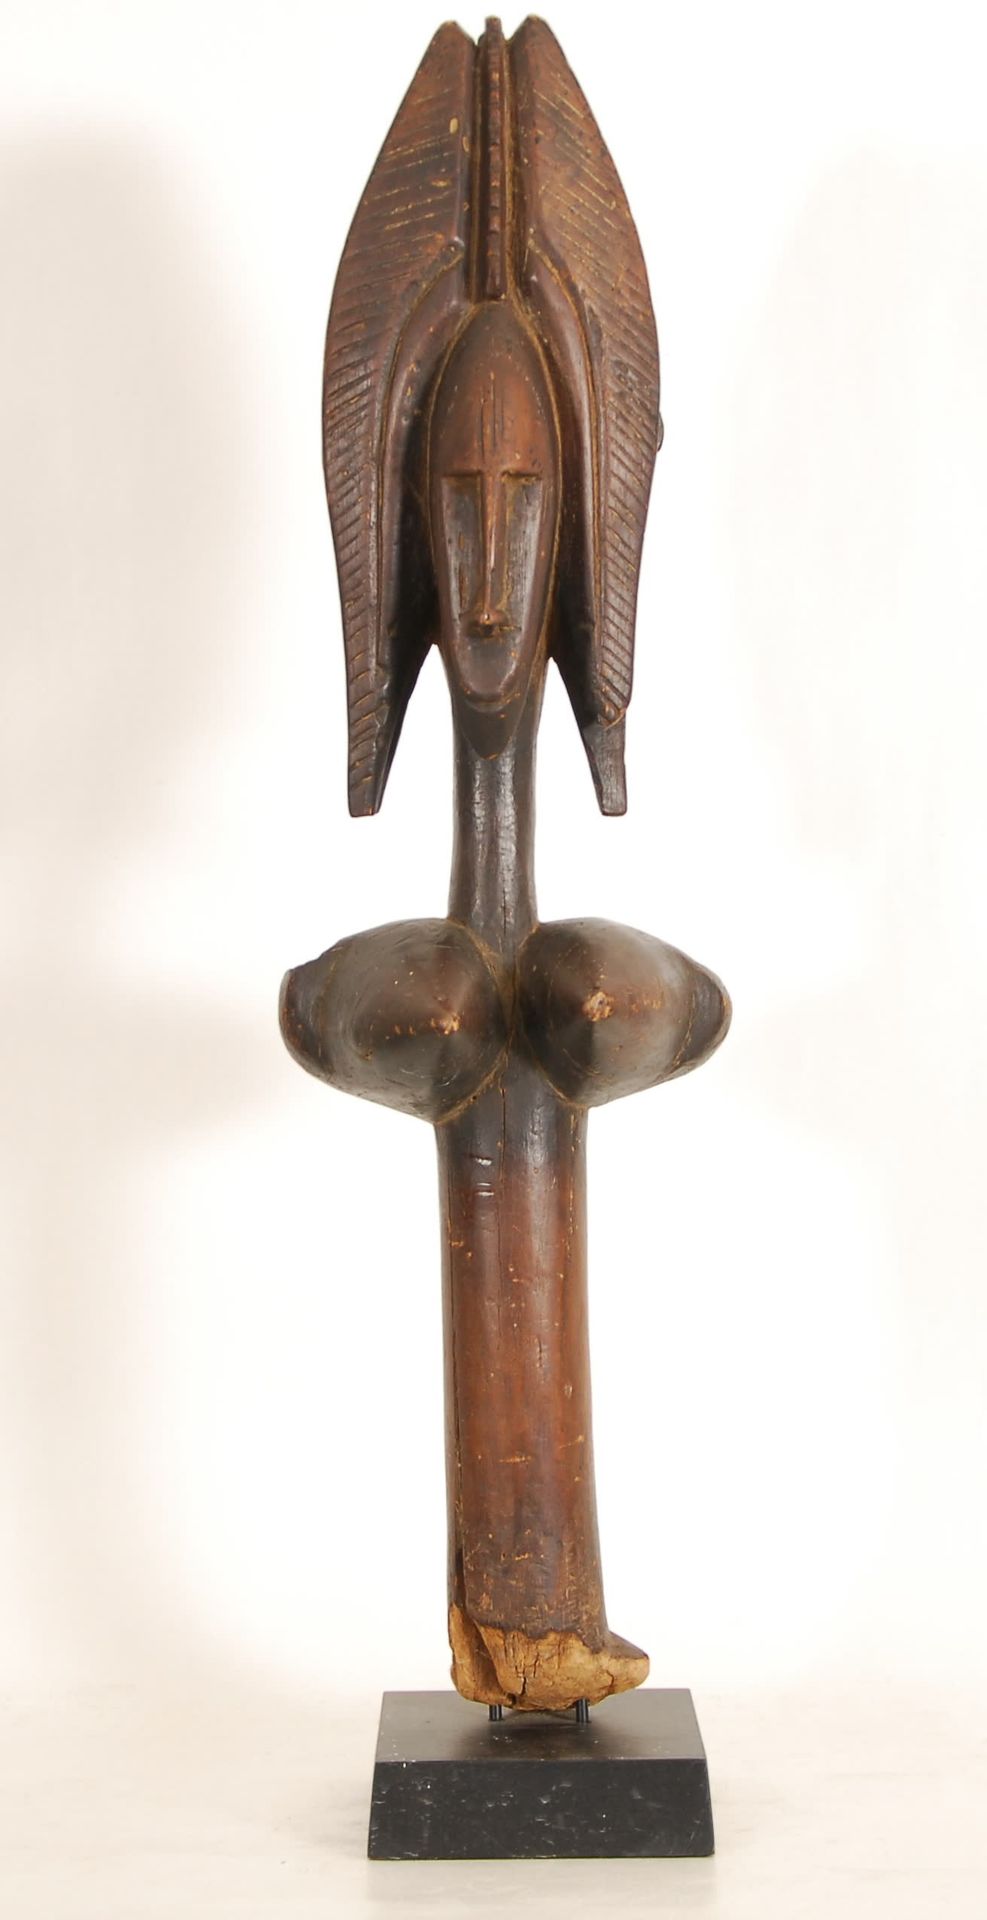 Afrique - Africa Marionnette Bambara
Bois sculpté, Mali.
H. 82 cm.
Provenance: a&hellip;